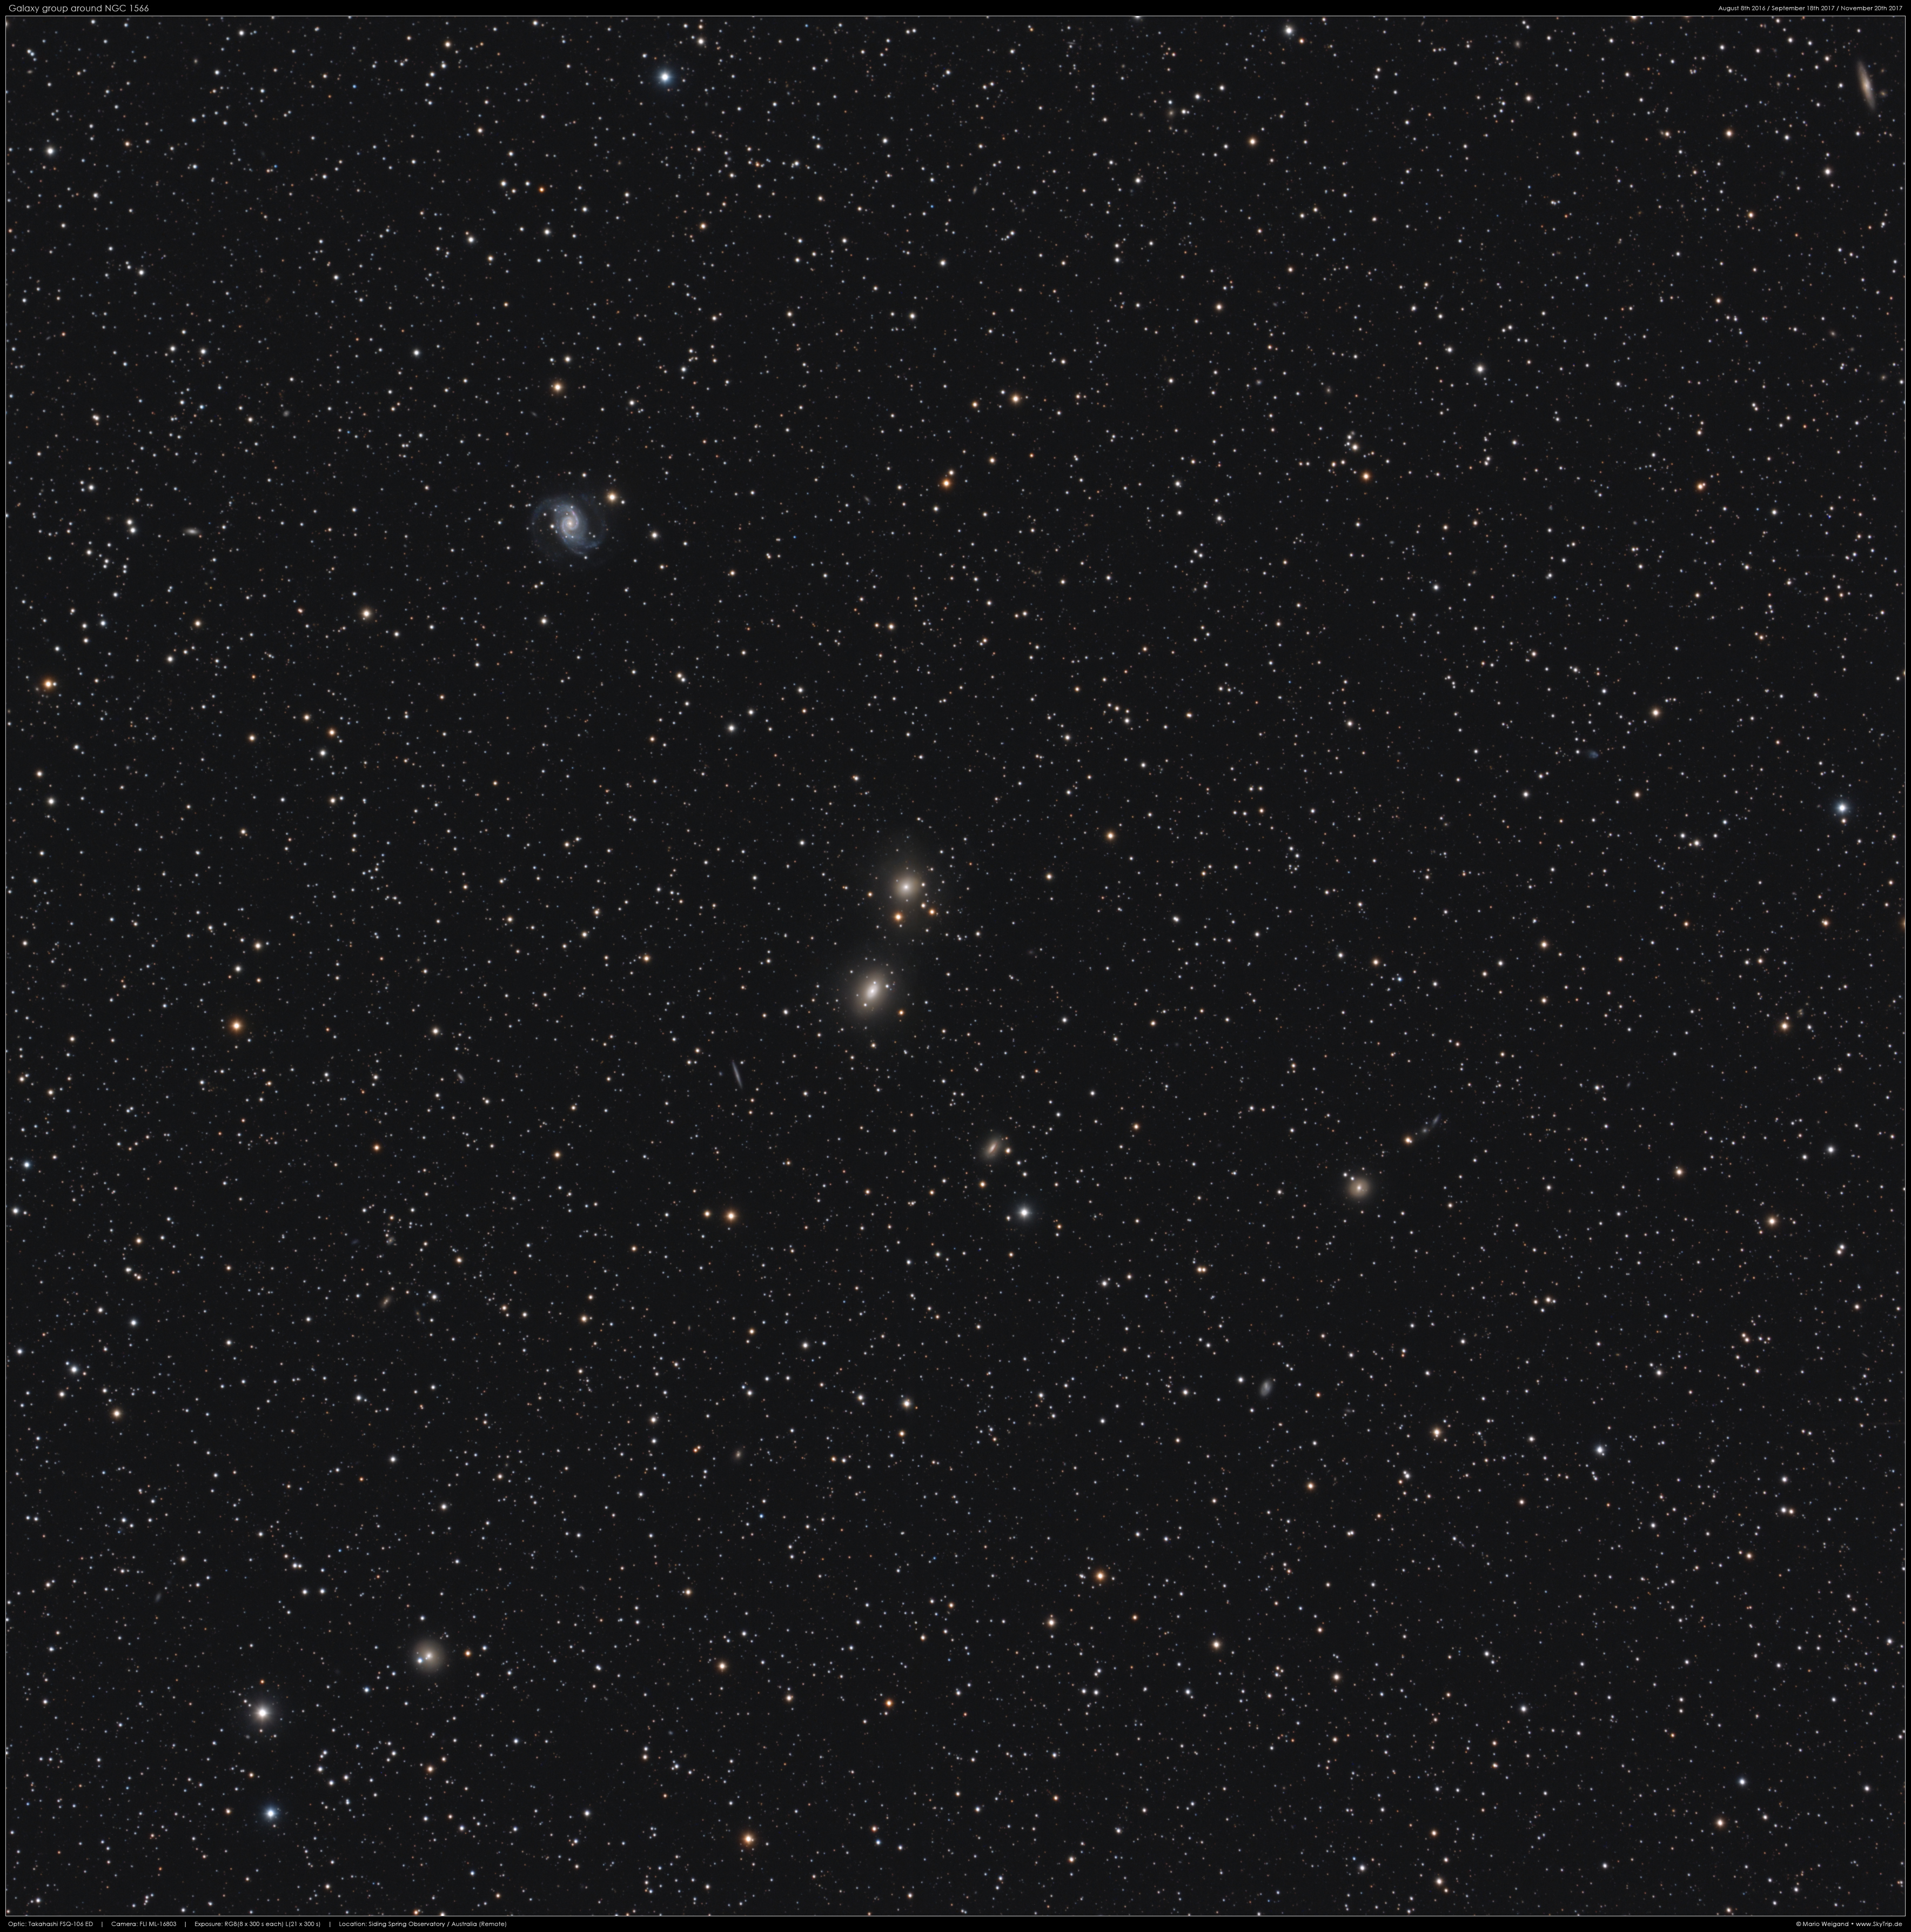 NGC 1566 & Co. in Doradus